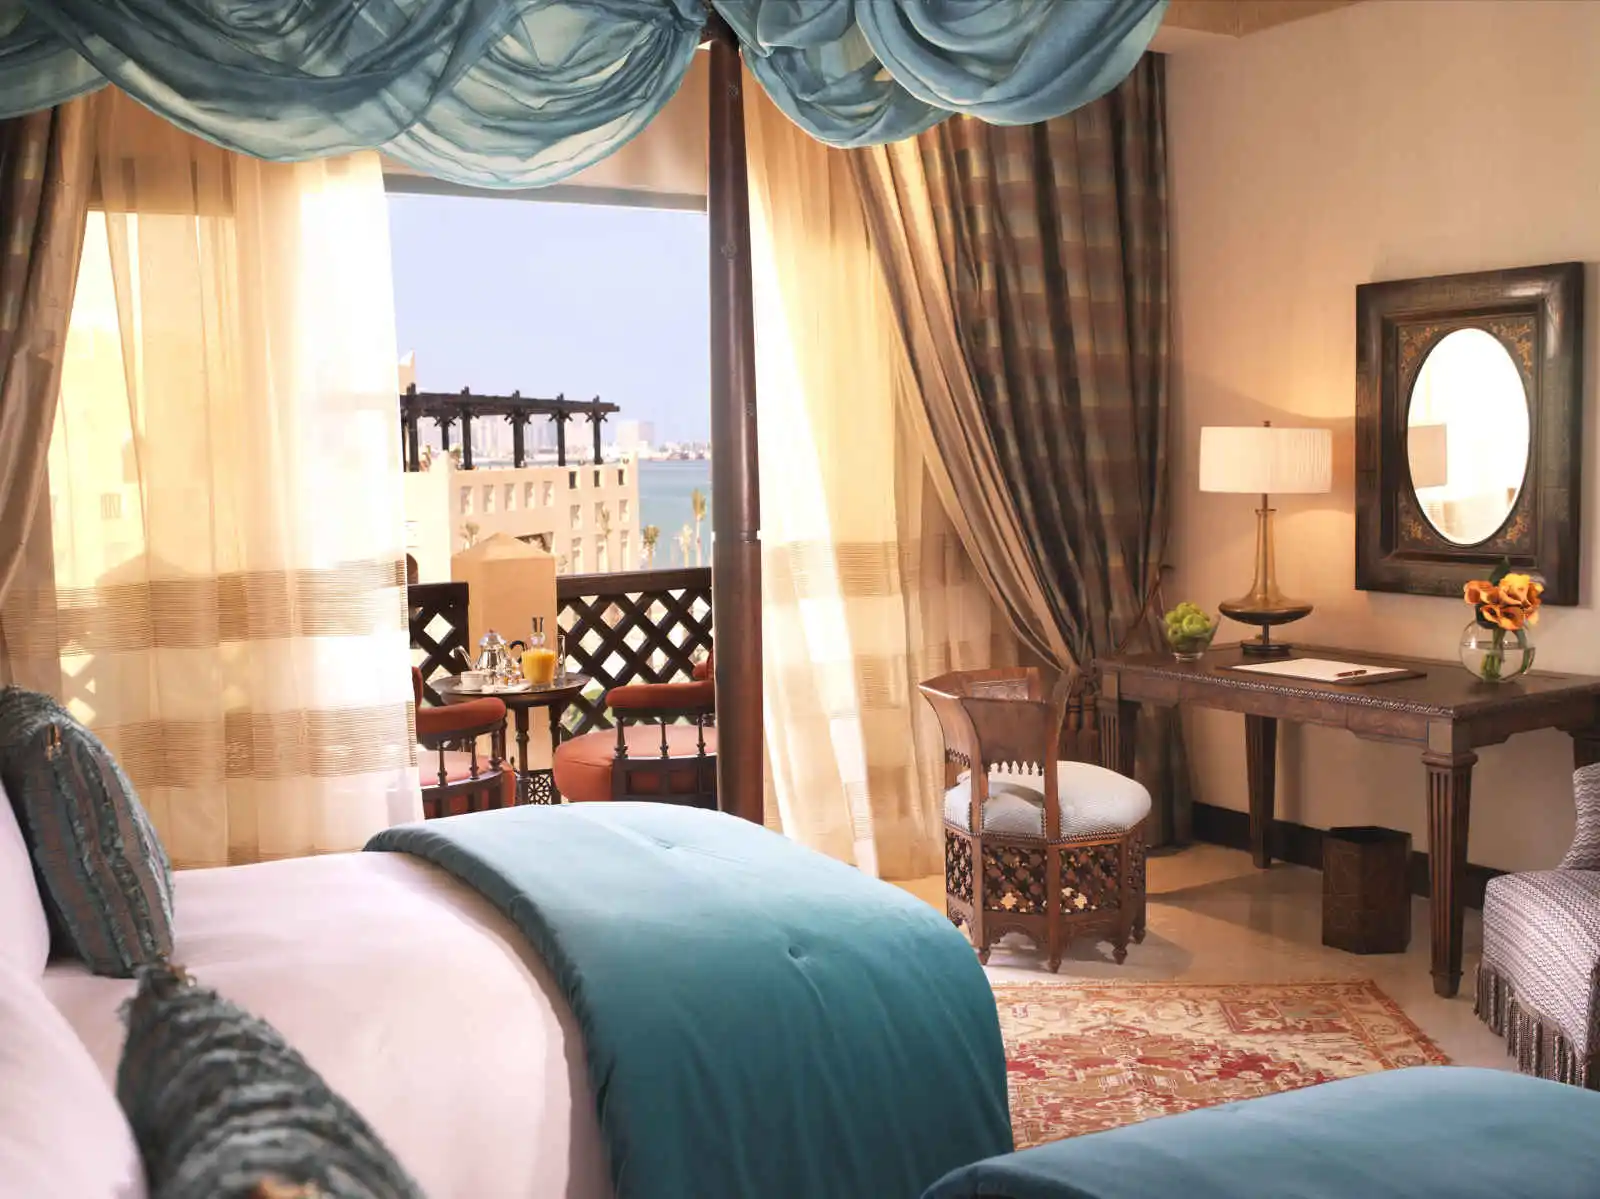 Sharq Village & Spa, A Ritz-Carlton Hotel - 5*